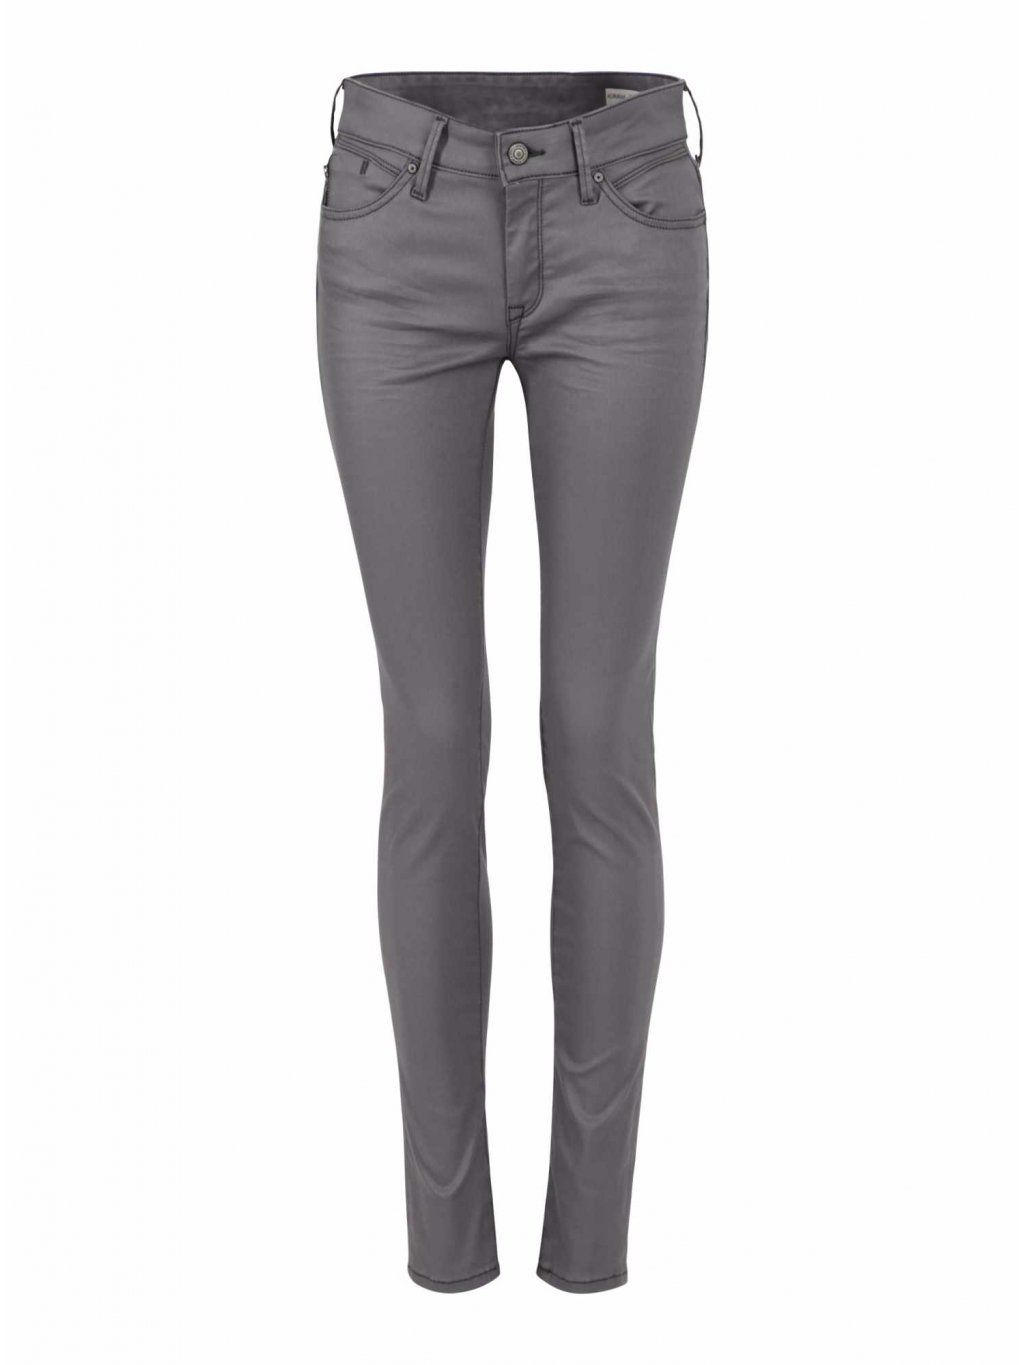 Mavi jeans dámské slim džíny ADRIANA grey jeather (Velikost 32/32)